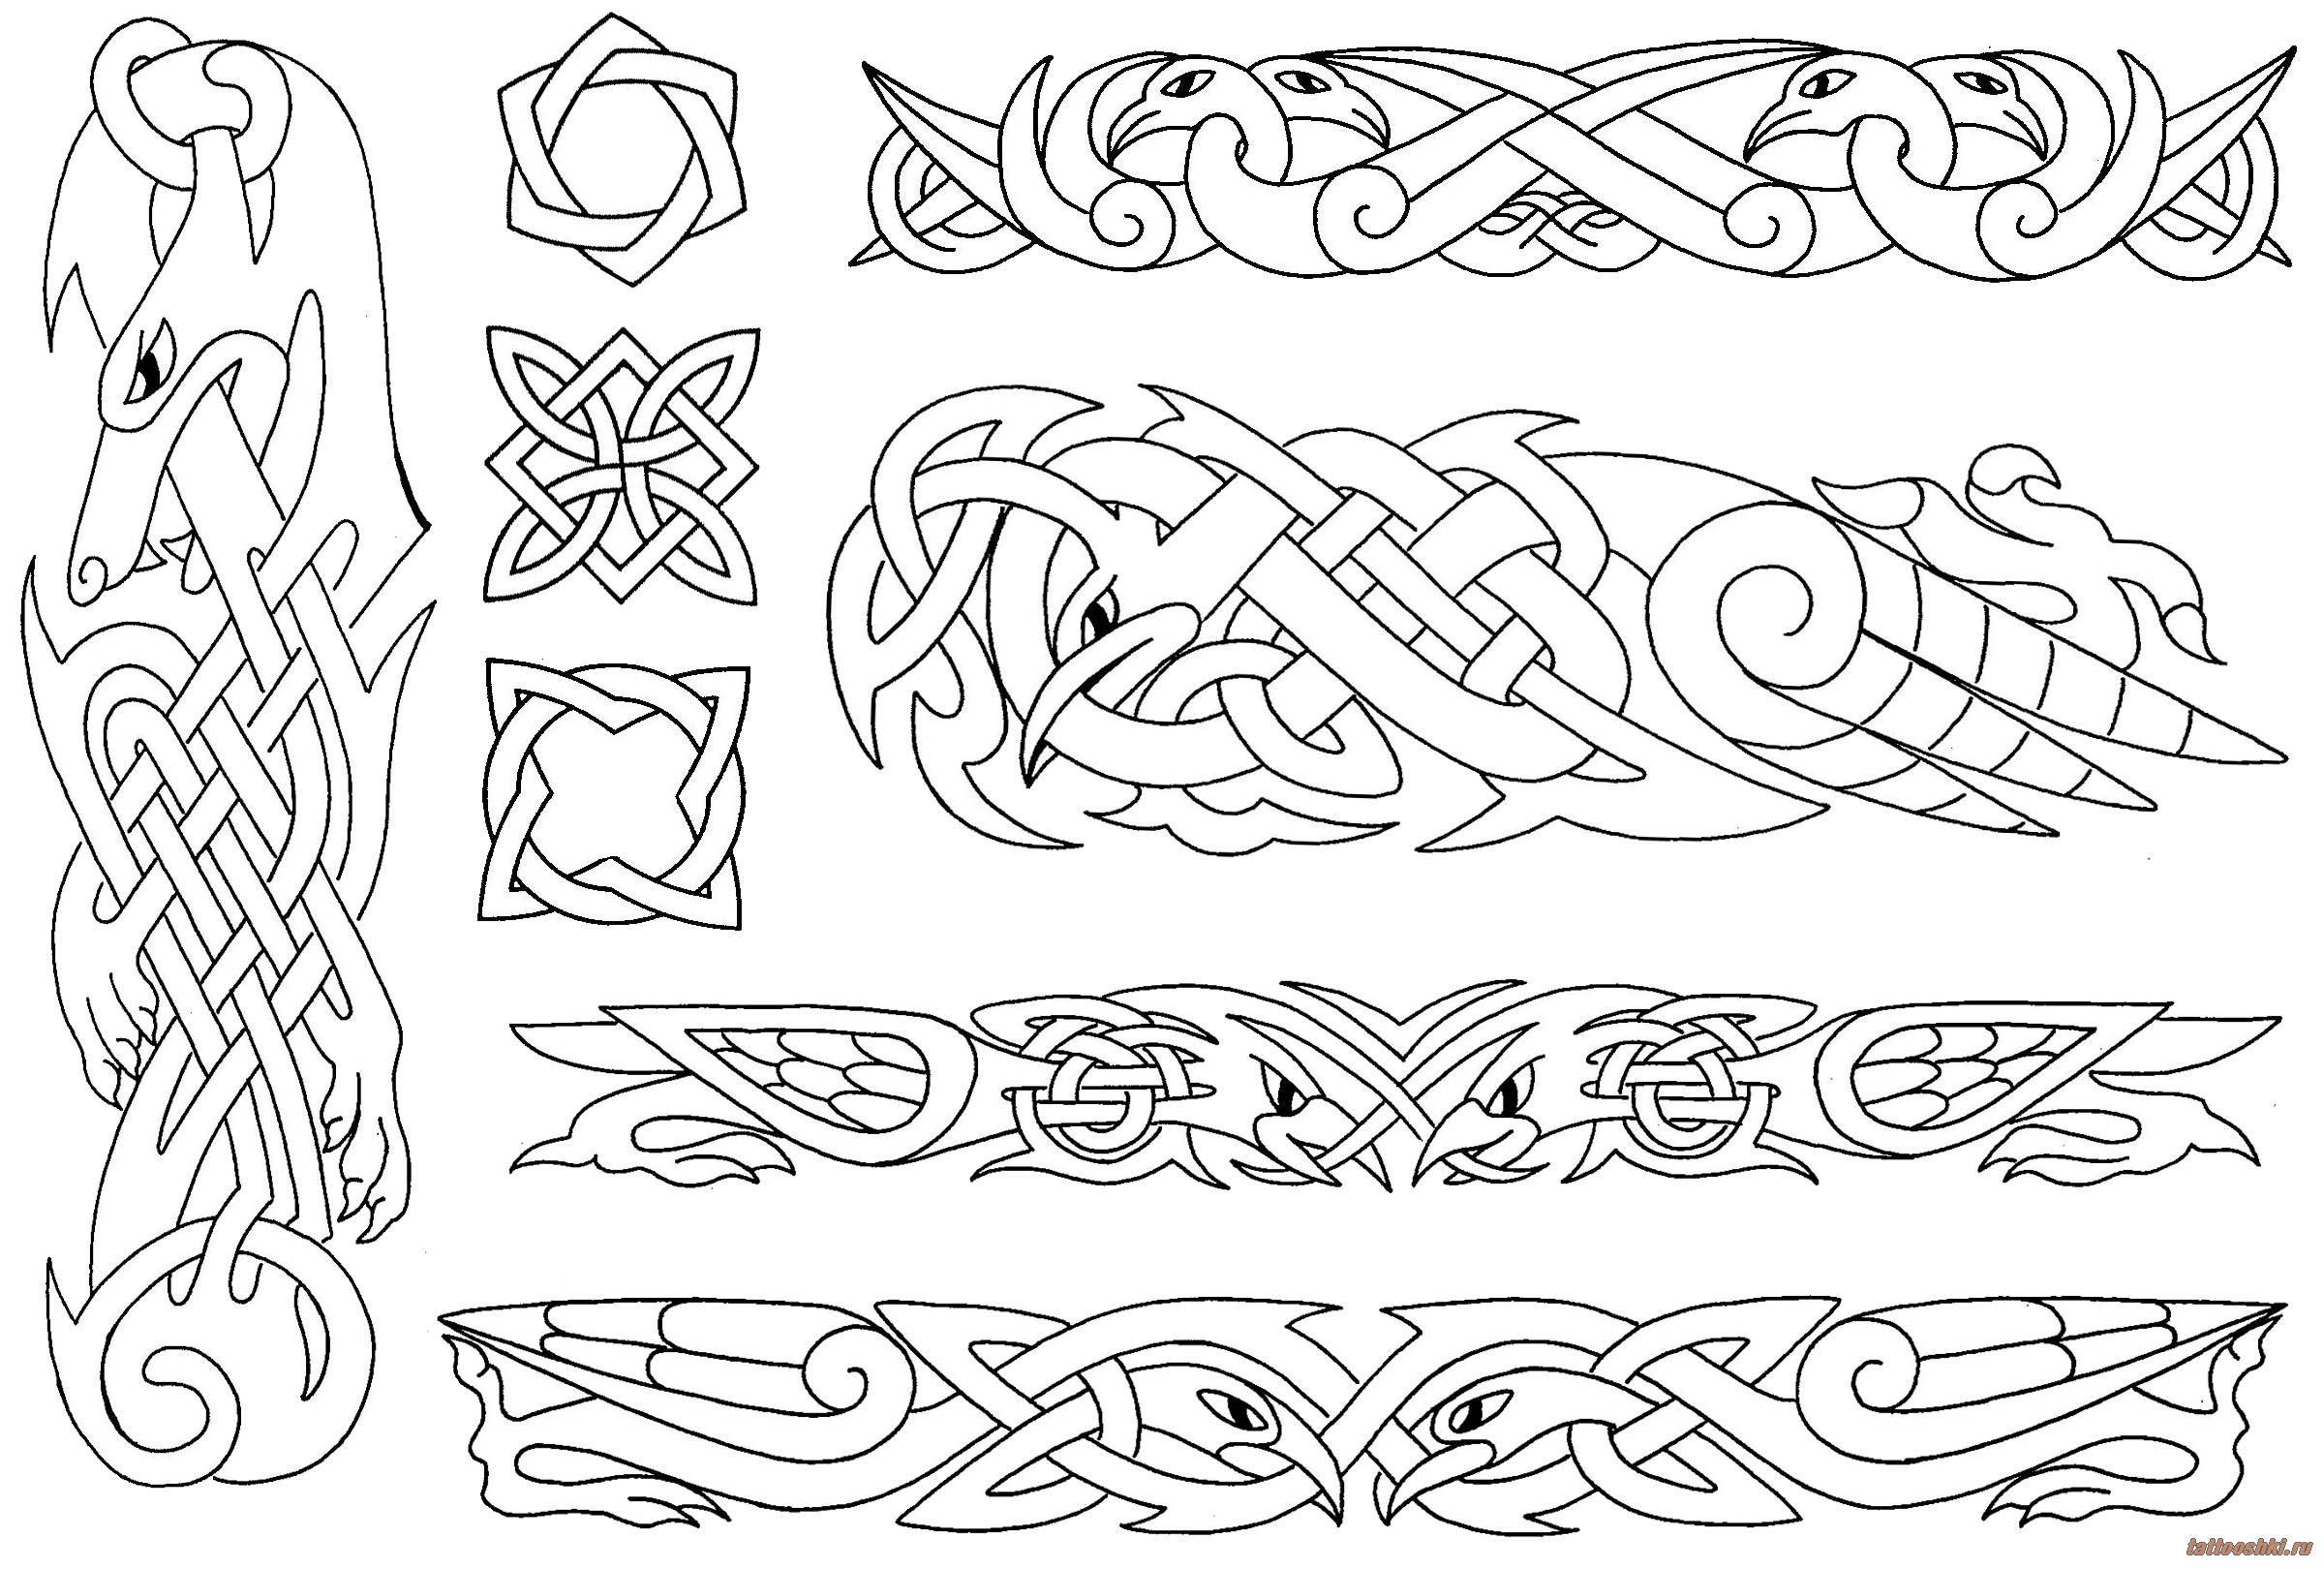 Кельтский браслет на предплечье | Племенная татуировка, Татуировки предплечья, Тату групп